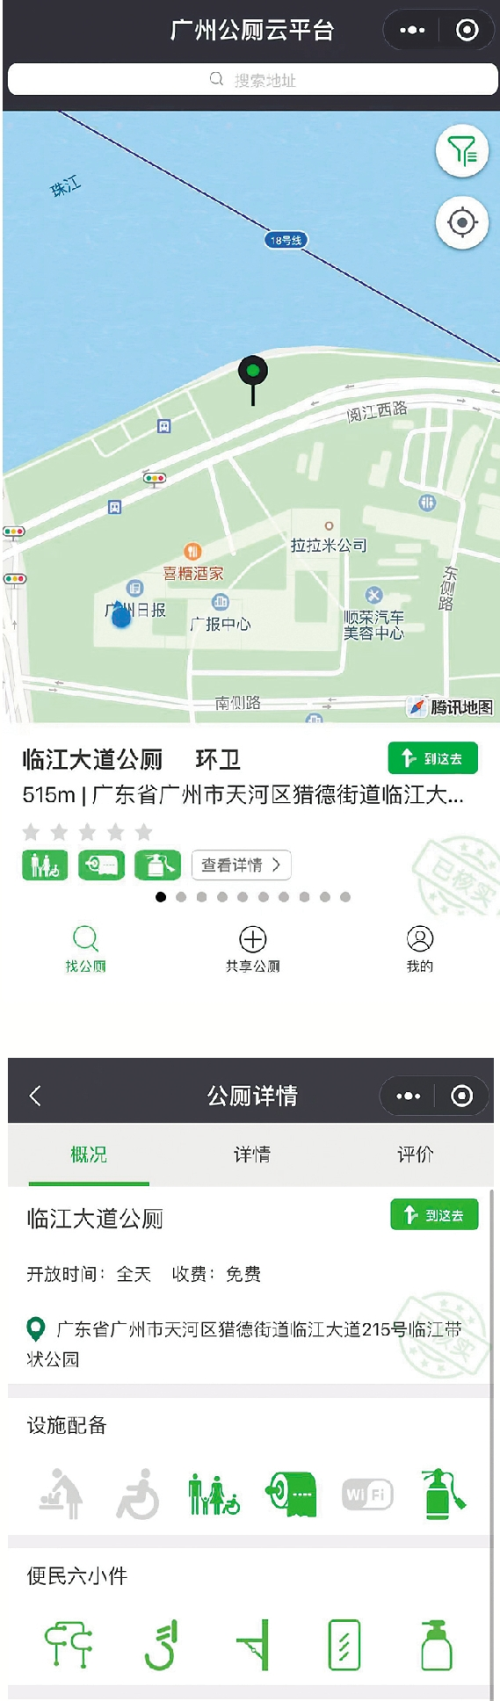 《广州市公共厕所管理办法》立法调研